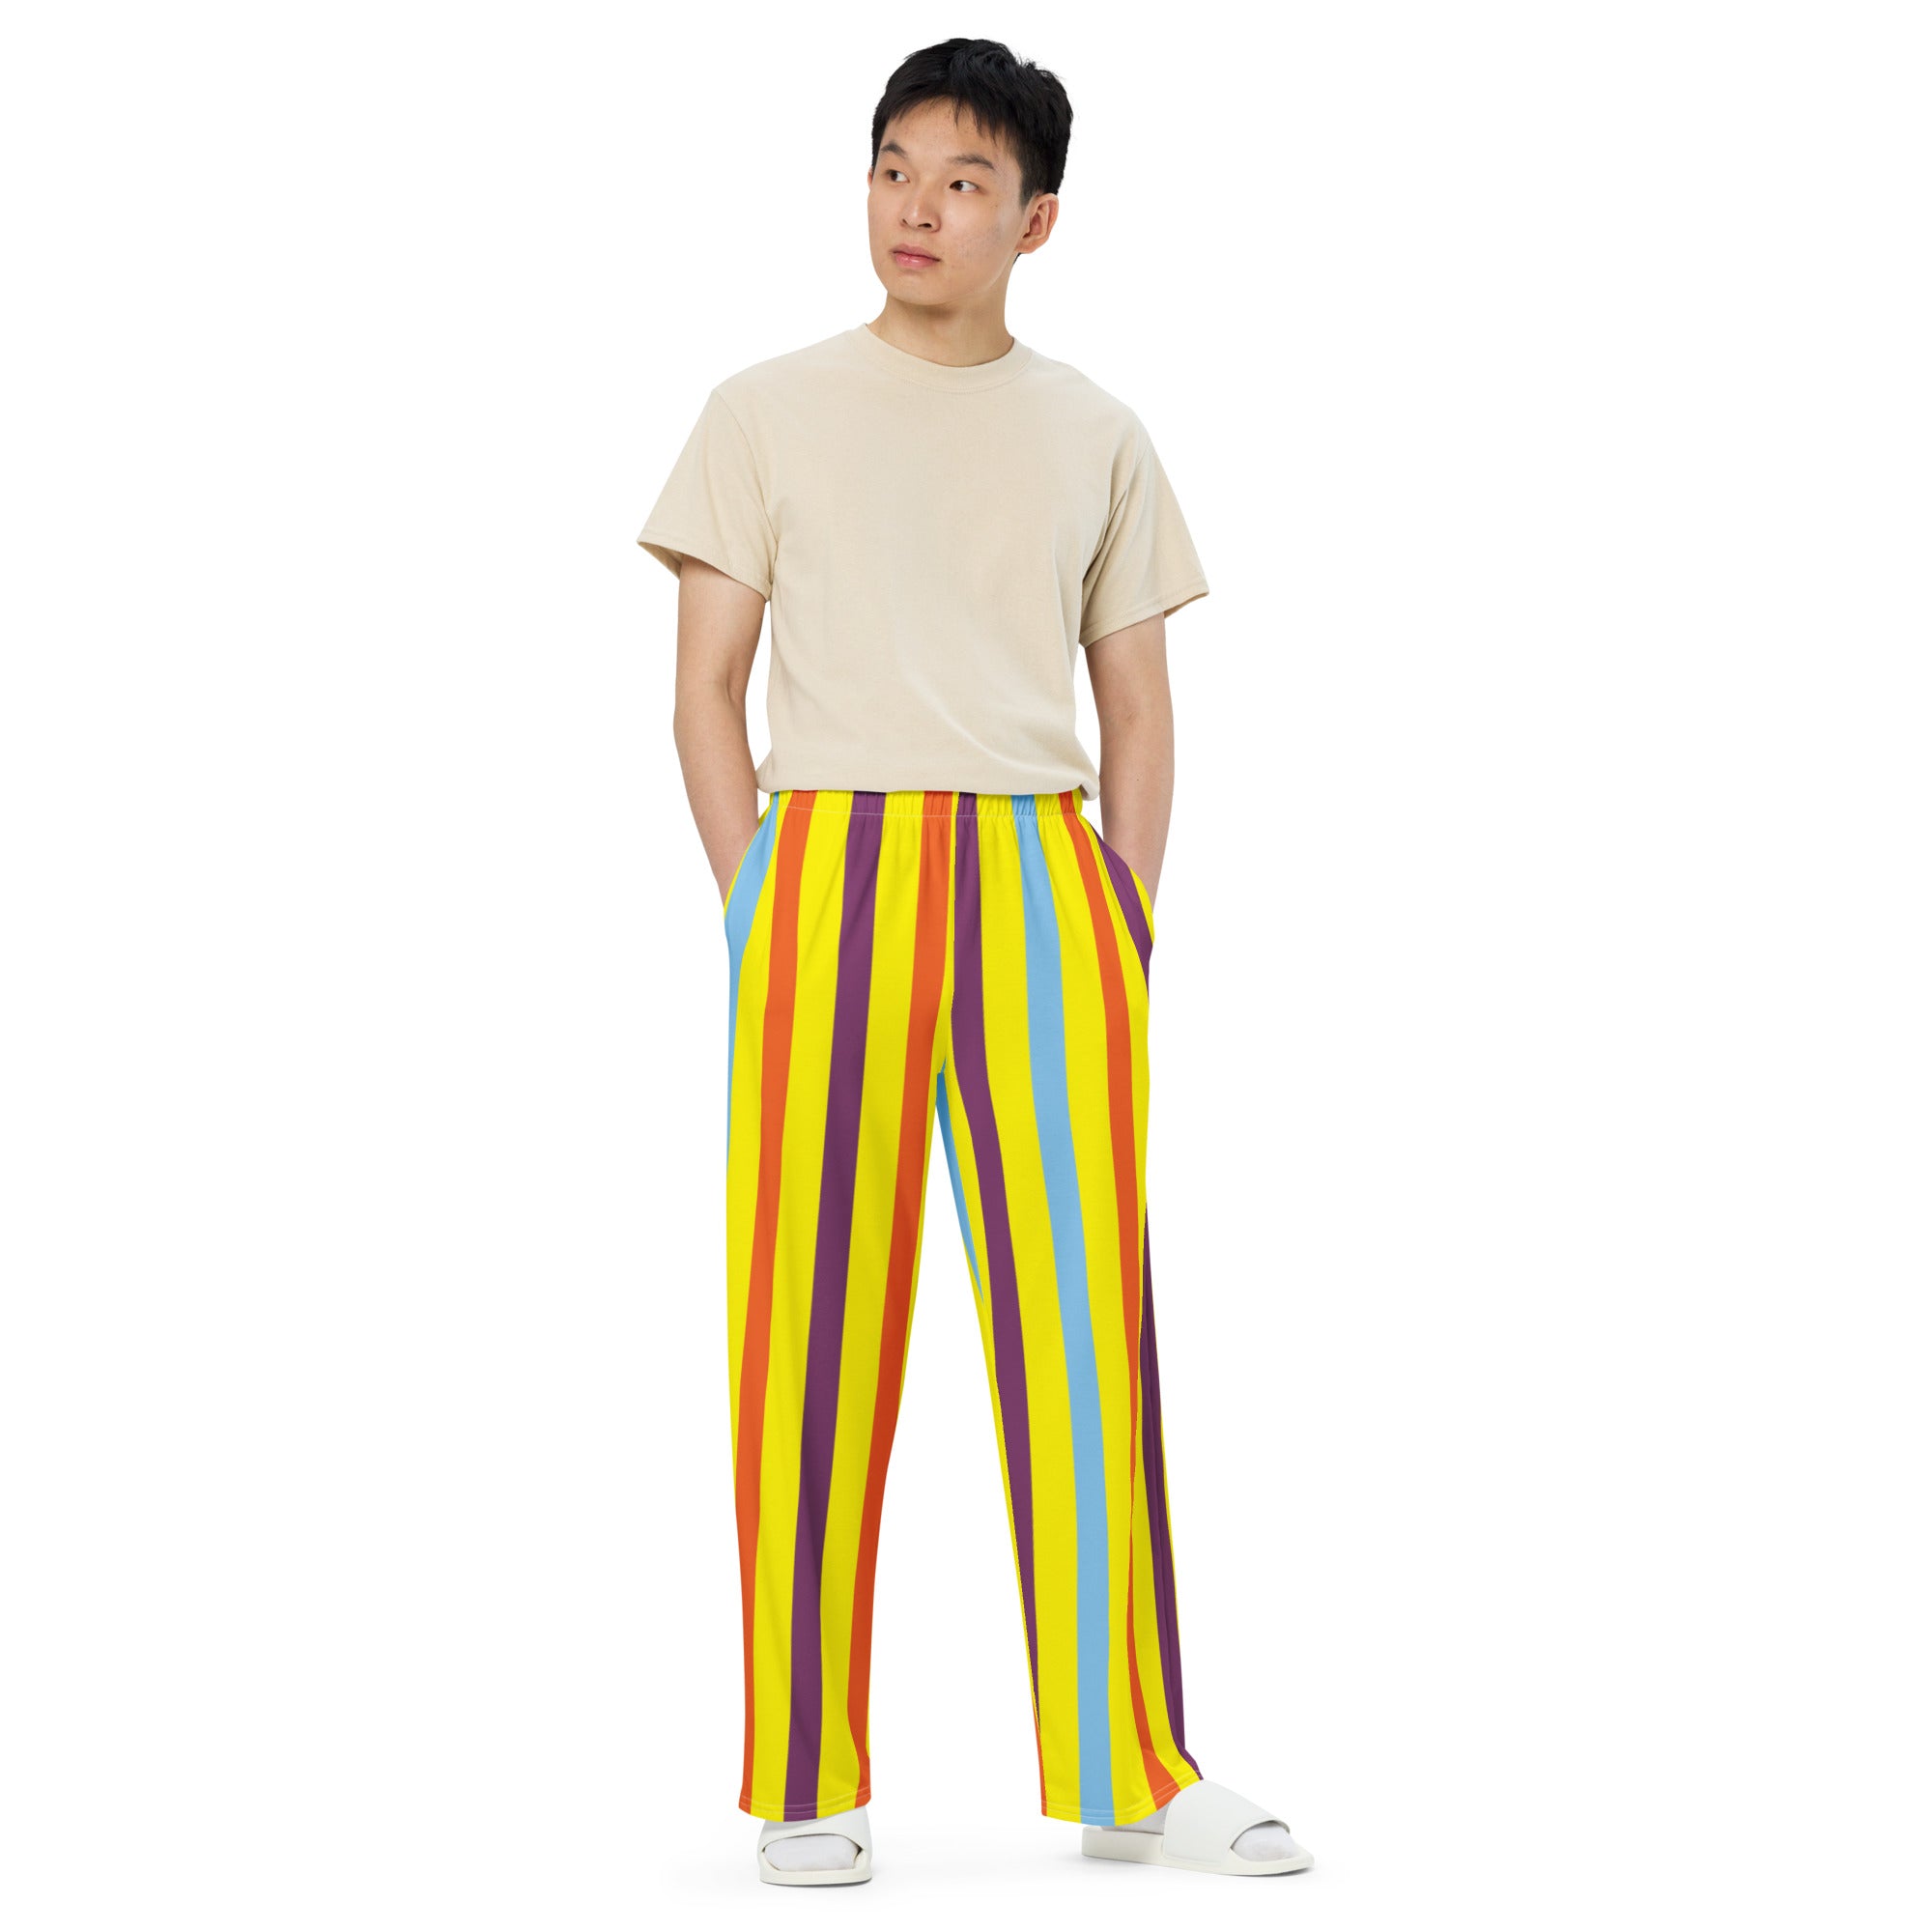 Hoodies4You "Look Like Ken" "Halloween" Yellow/multi Color Stripe PJ Pants